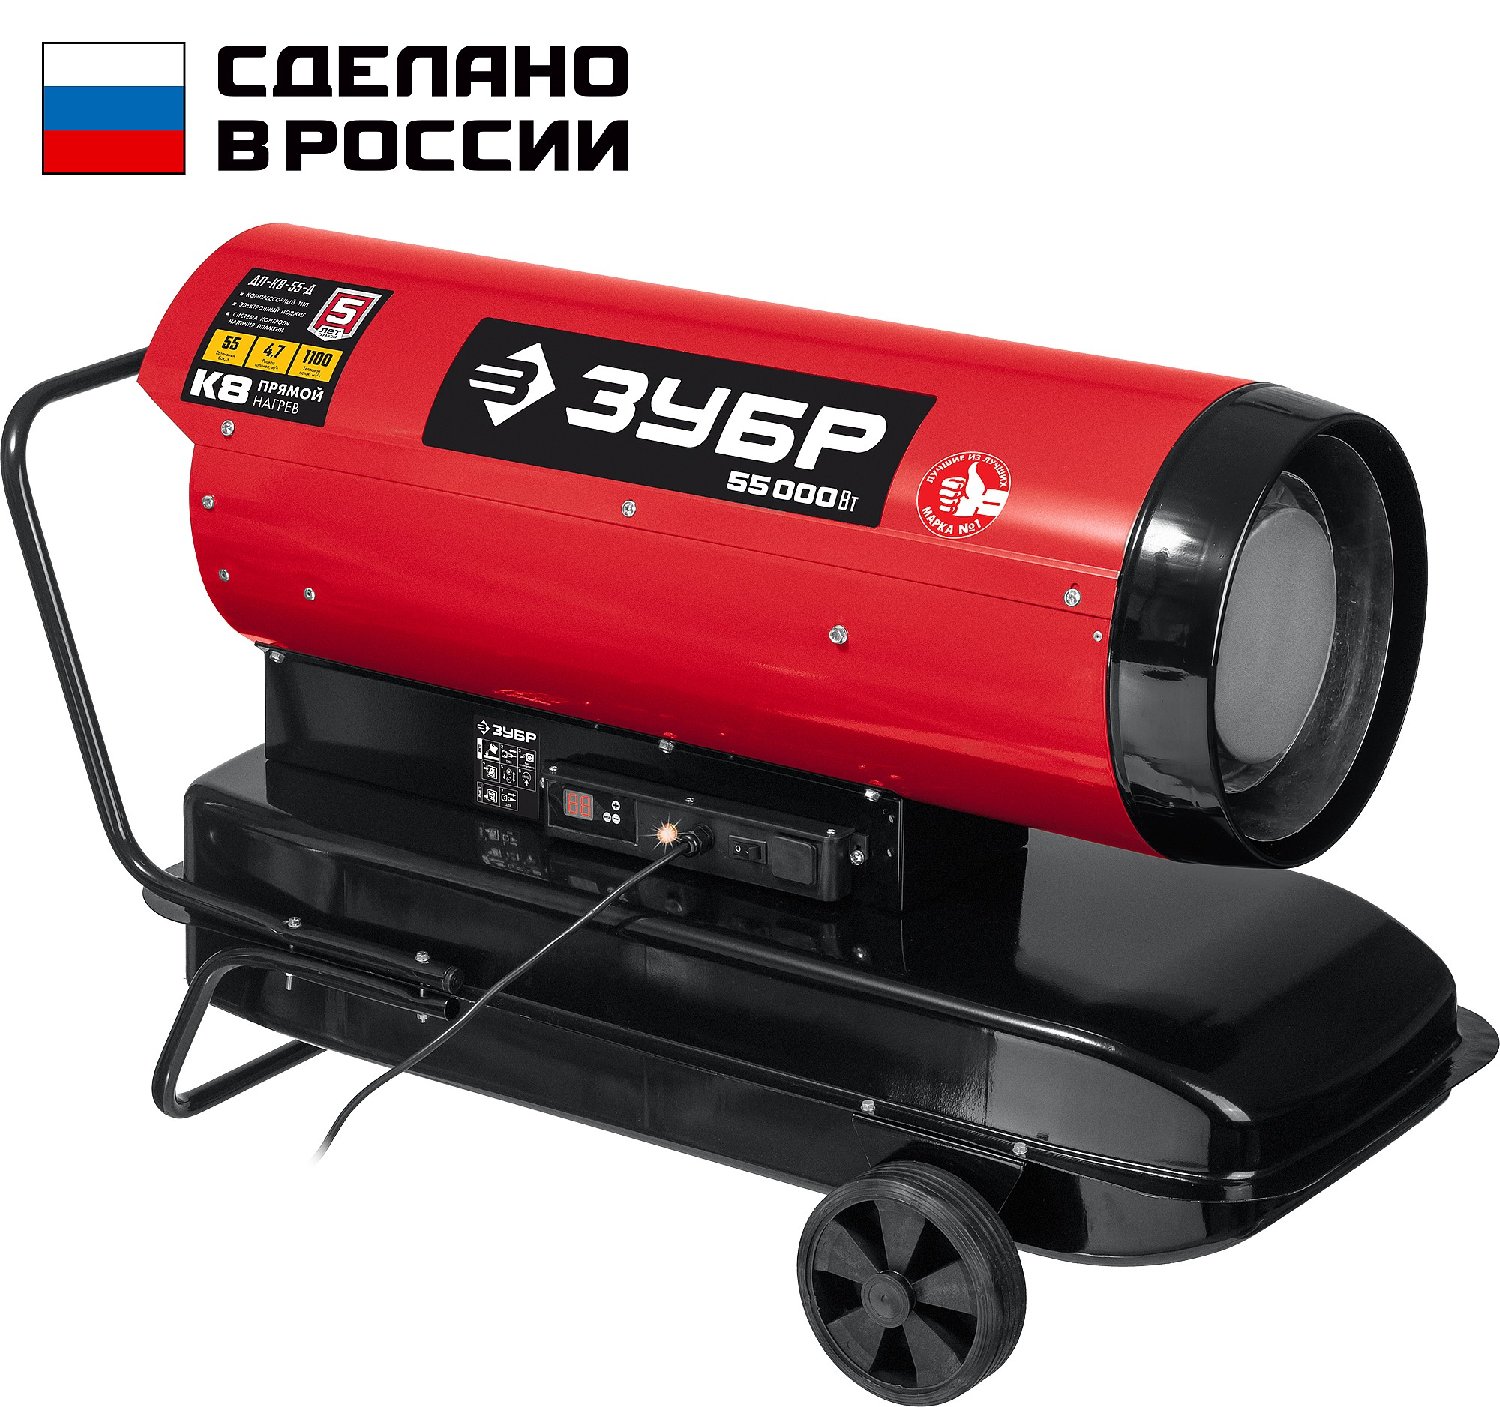 ЗУБР 55 кВт, дизельная тепловая пушка, прямой нагрев () (ДП-К8-55-Д)